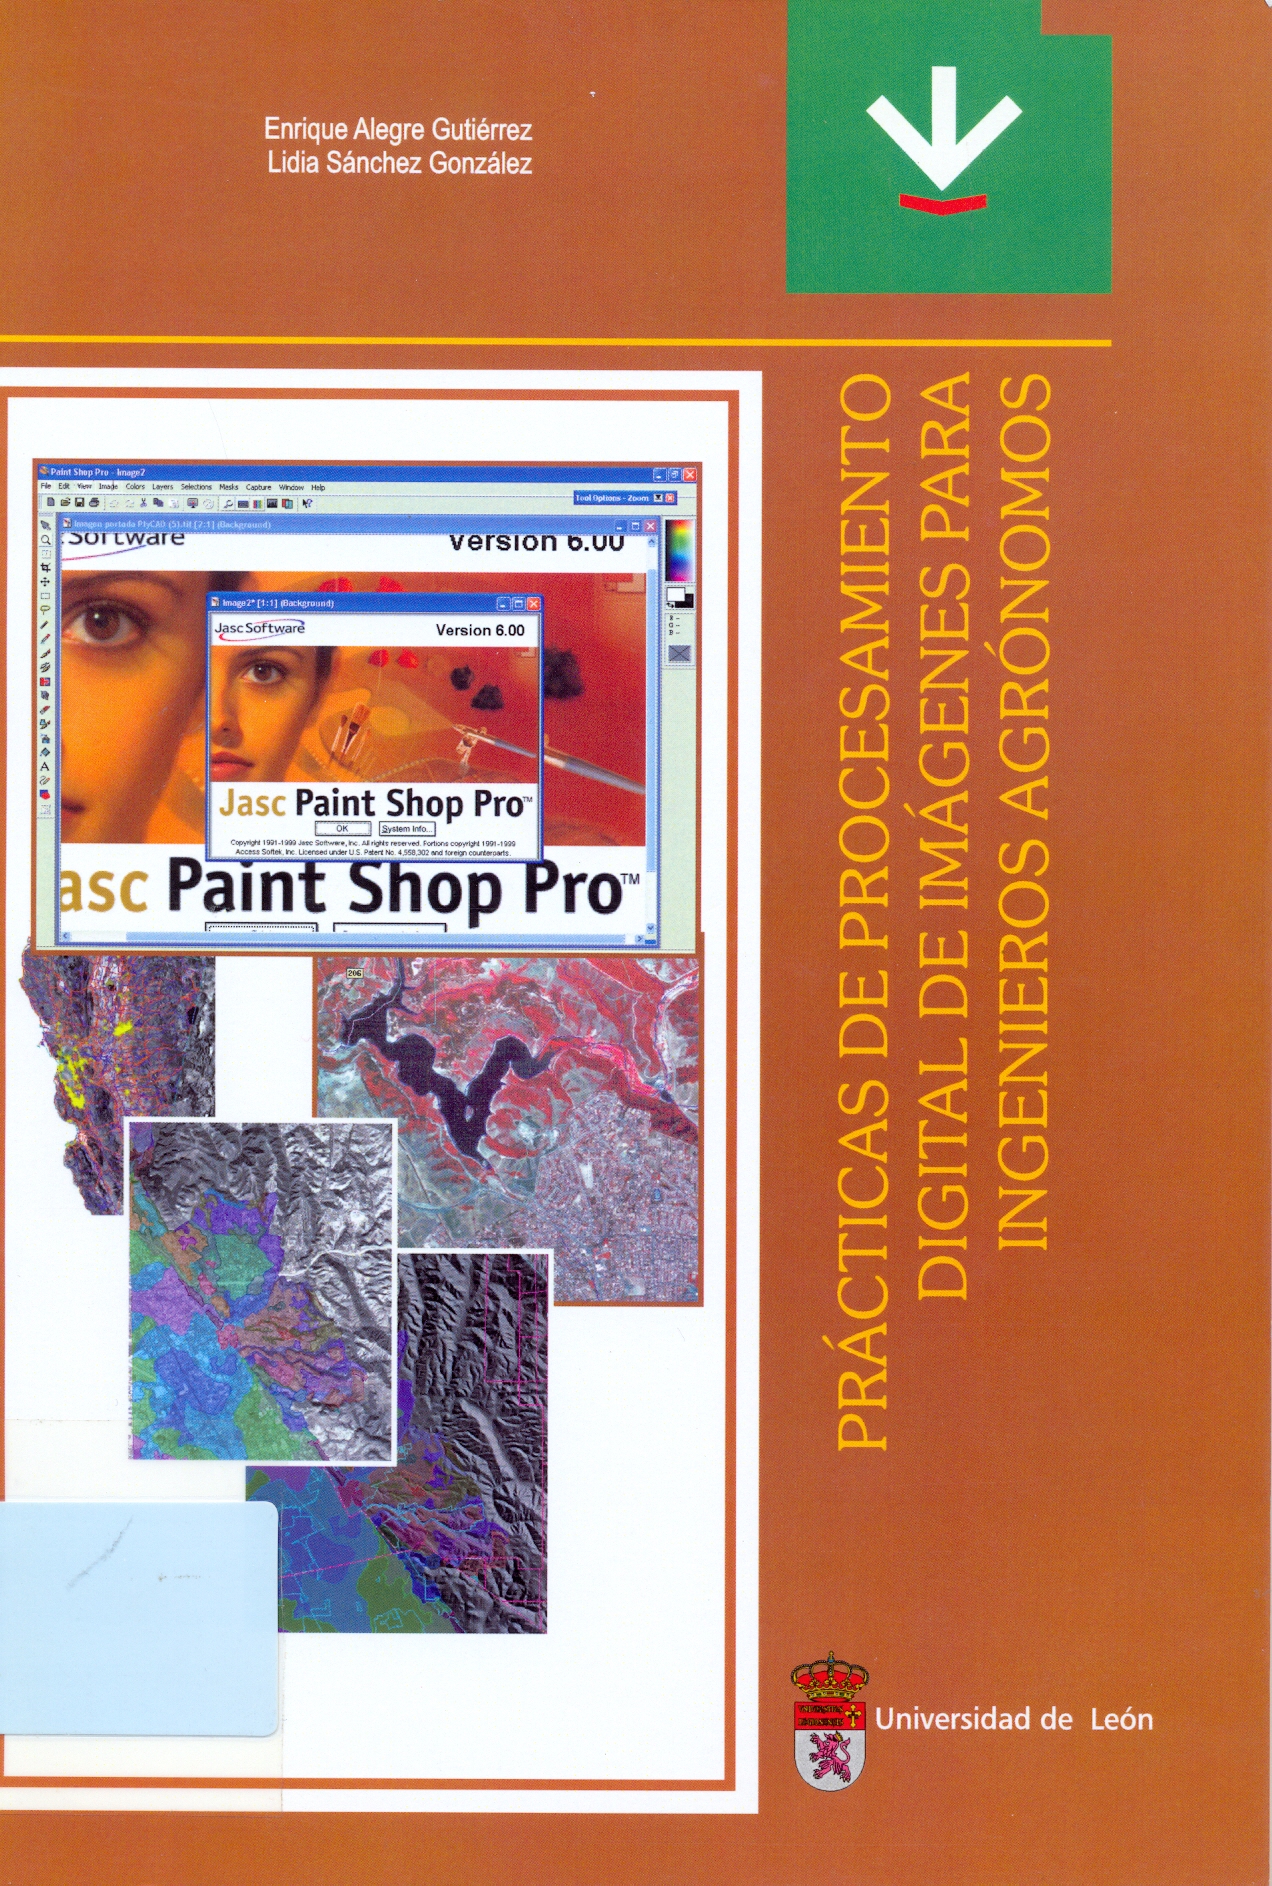 Imagen de portada del libro Prácticas de procesamiento digital de imágenes para ingenieros agrónomos